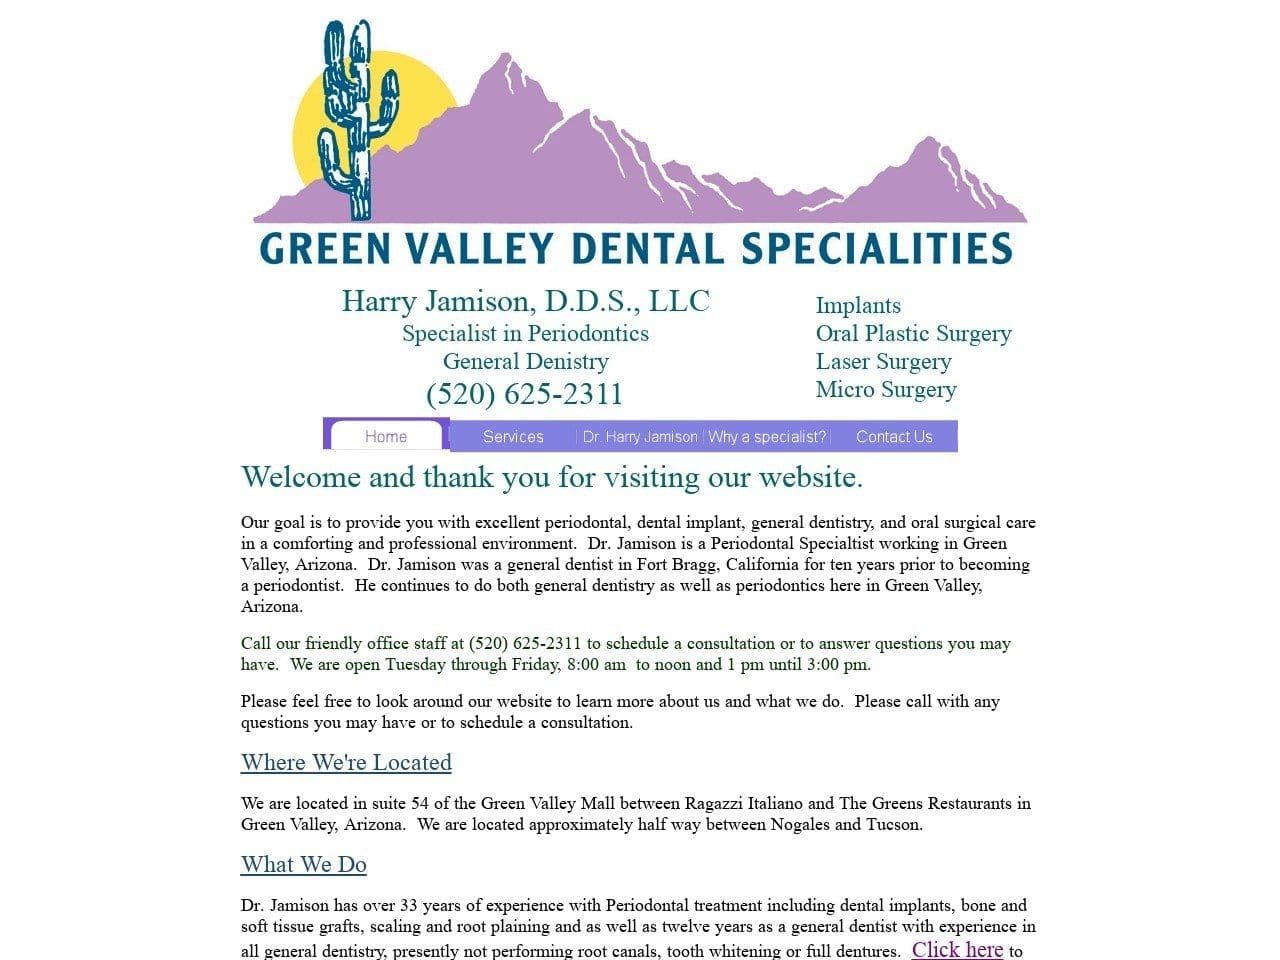 Green Valley Dental Spec Website Screenshot from greenvalleydentalspecialties.com